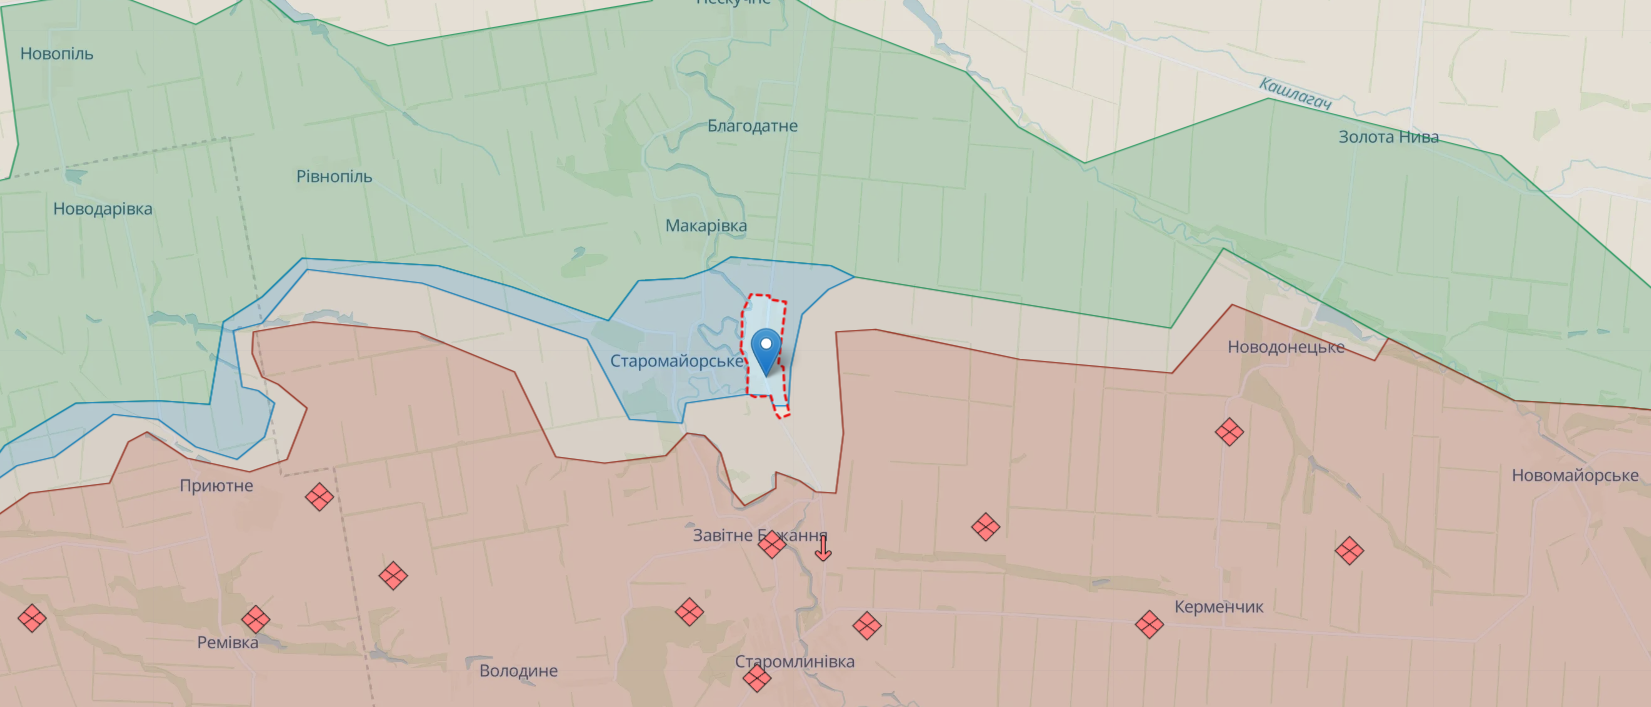 Three people were evacuated from Urozhayne in Donetsk region: Kirilenko told details